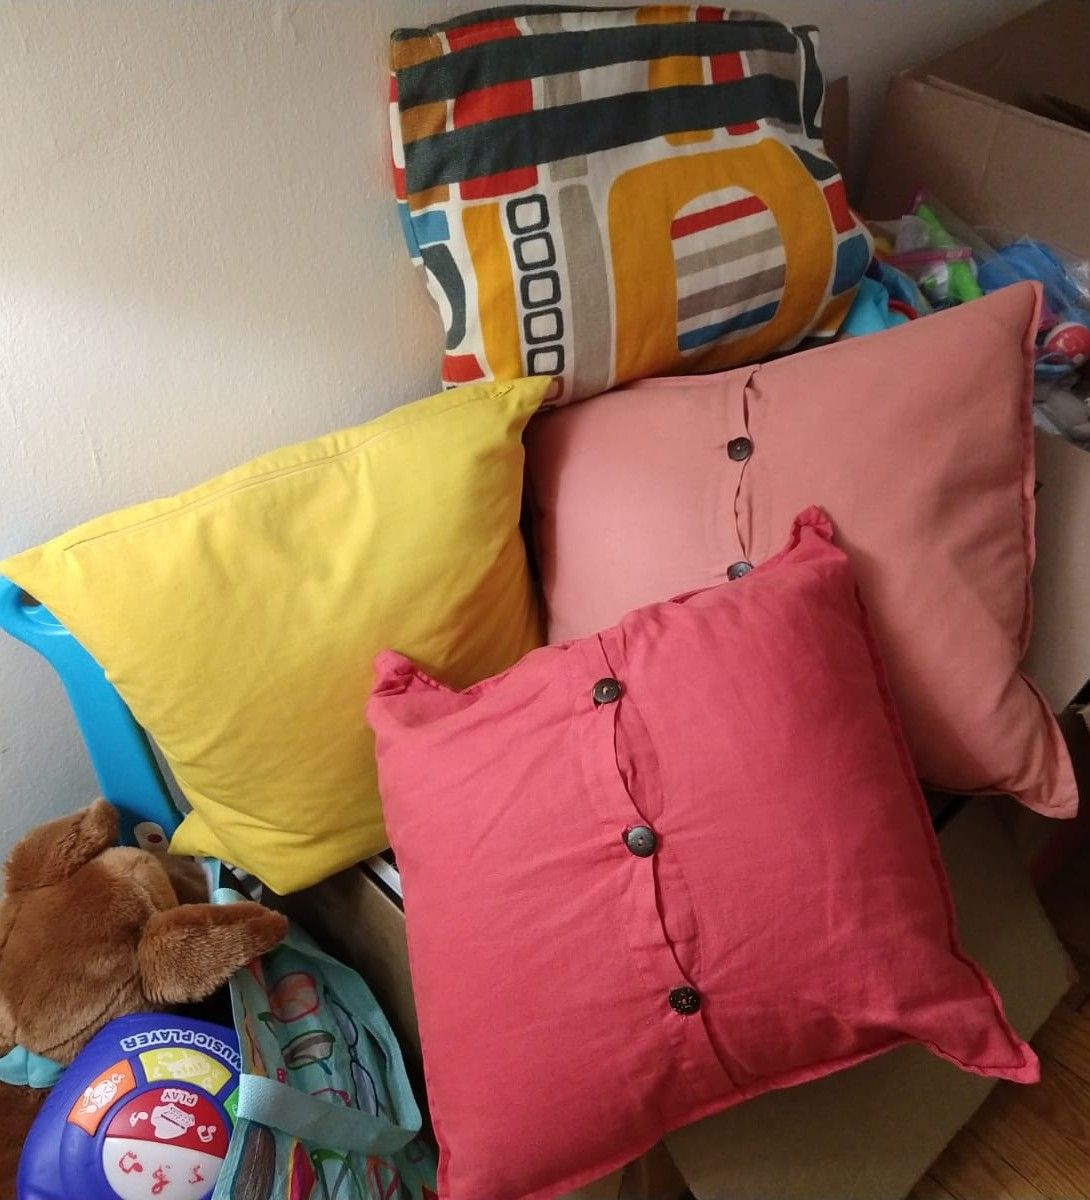 Sofa Pillows